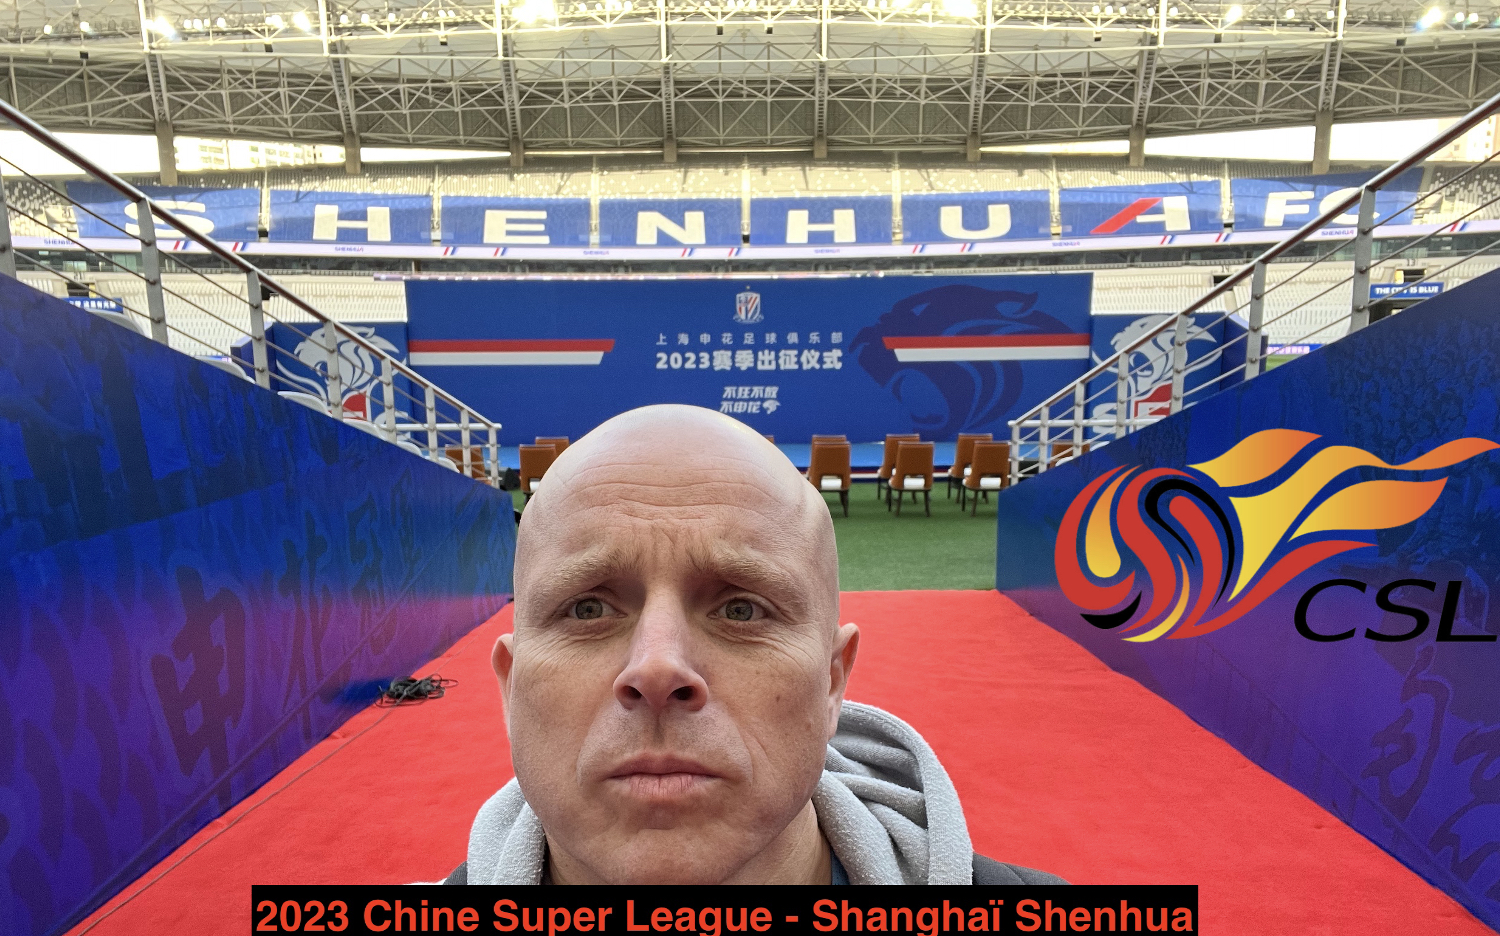 2019-2023 Chine Super League - Shanghaï Shenhua